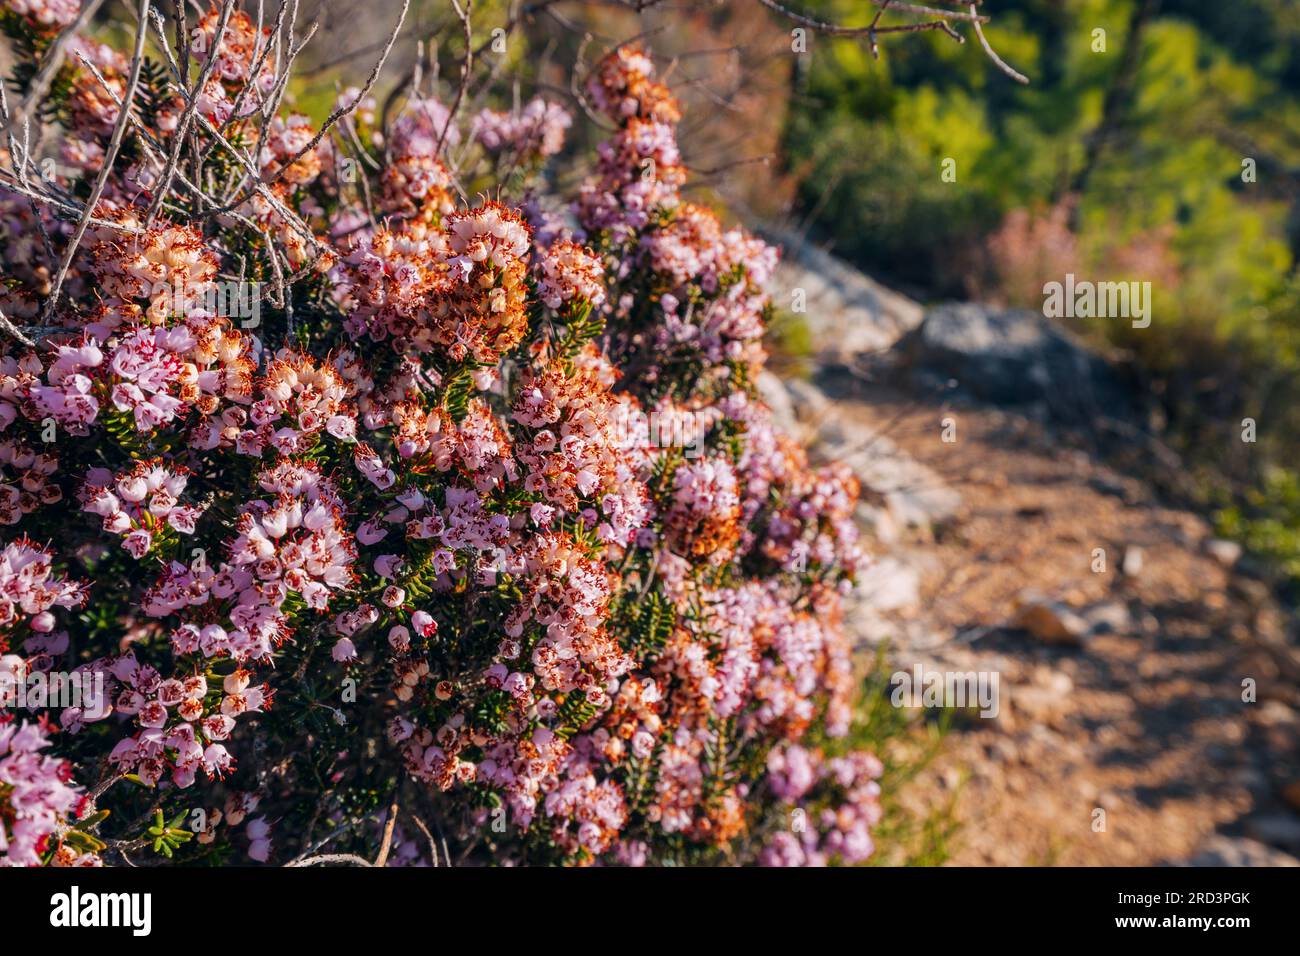 colori vivaci e dettagli intricati dei fiori di erica, che catturano la loro graziosa presenza sullo sfondo naturale. Foto Stock